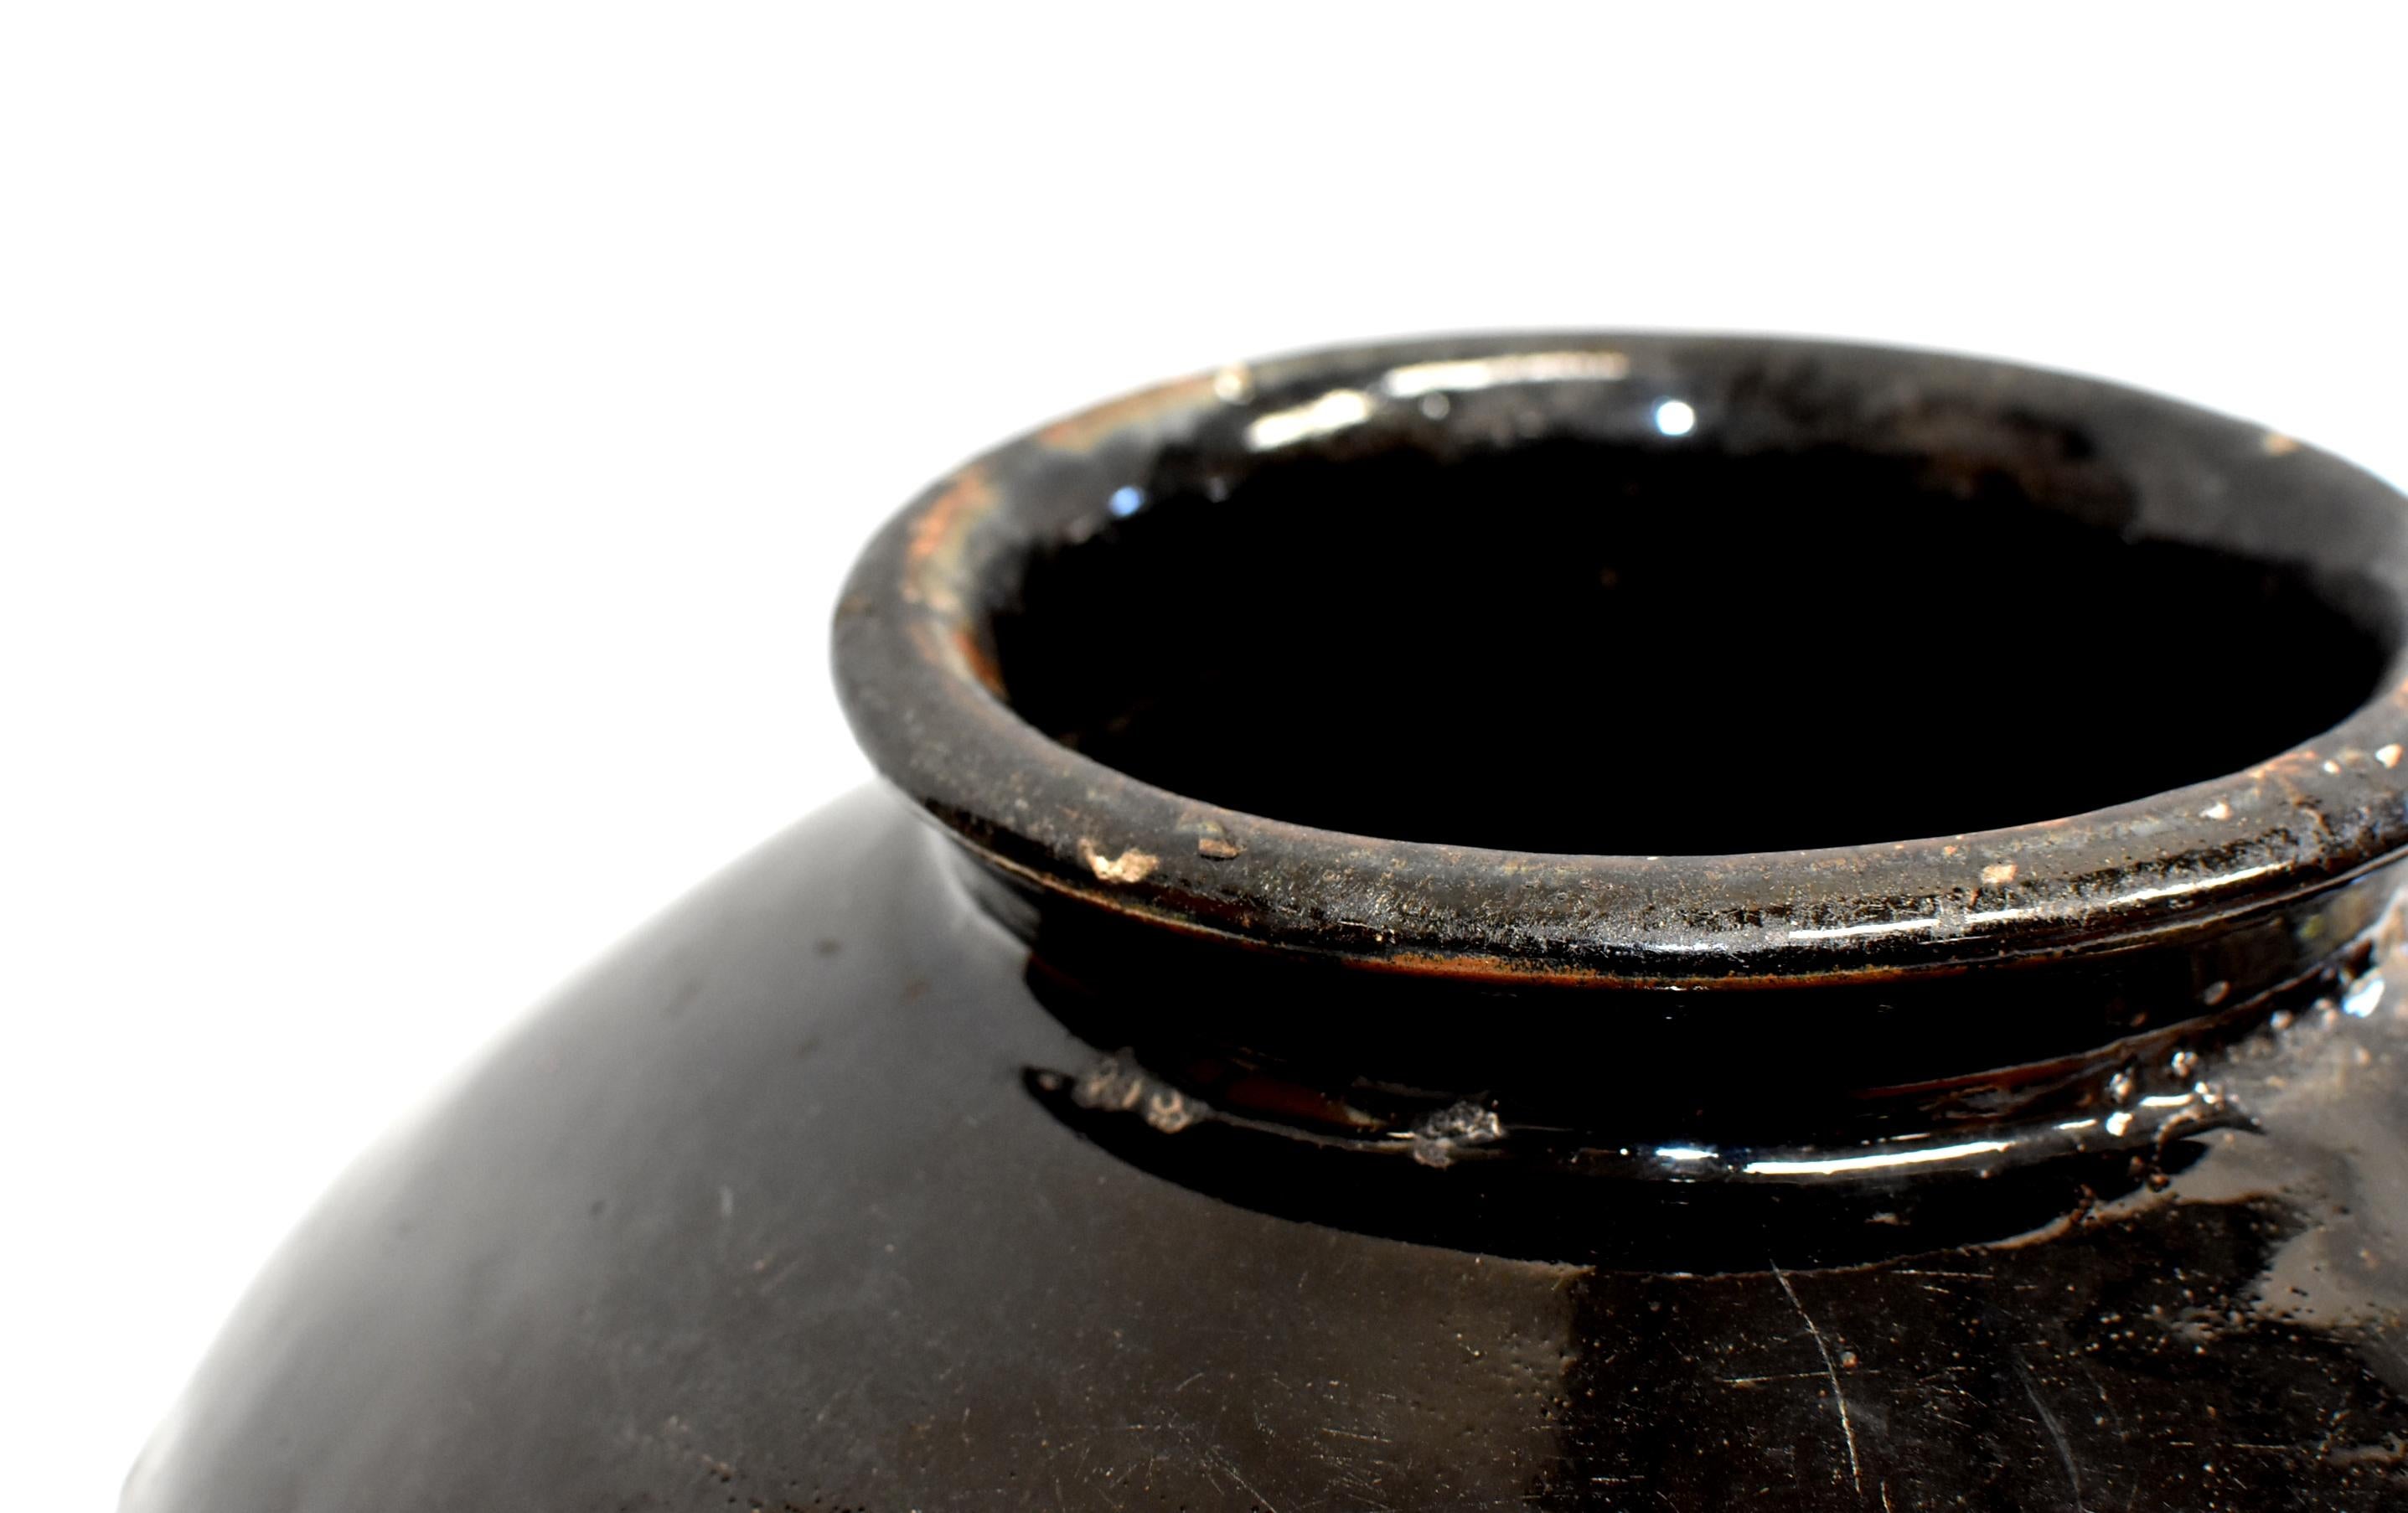 Large Chinese Antique Black Pottery Jar, Slanted Shoulders 13